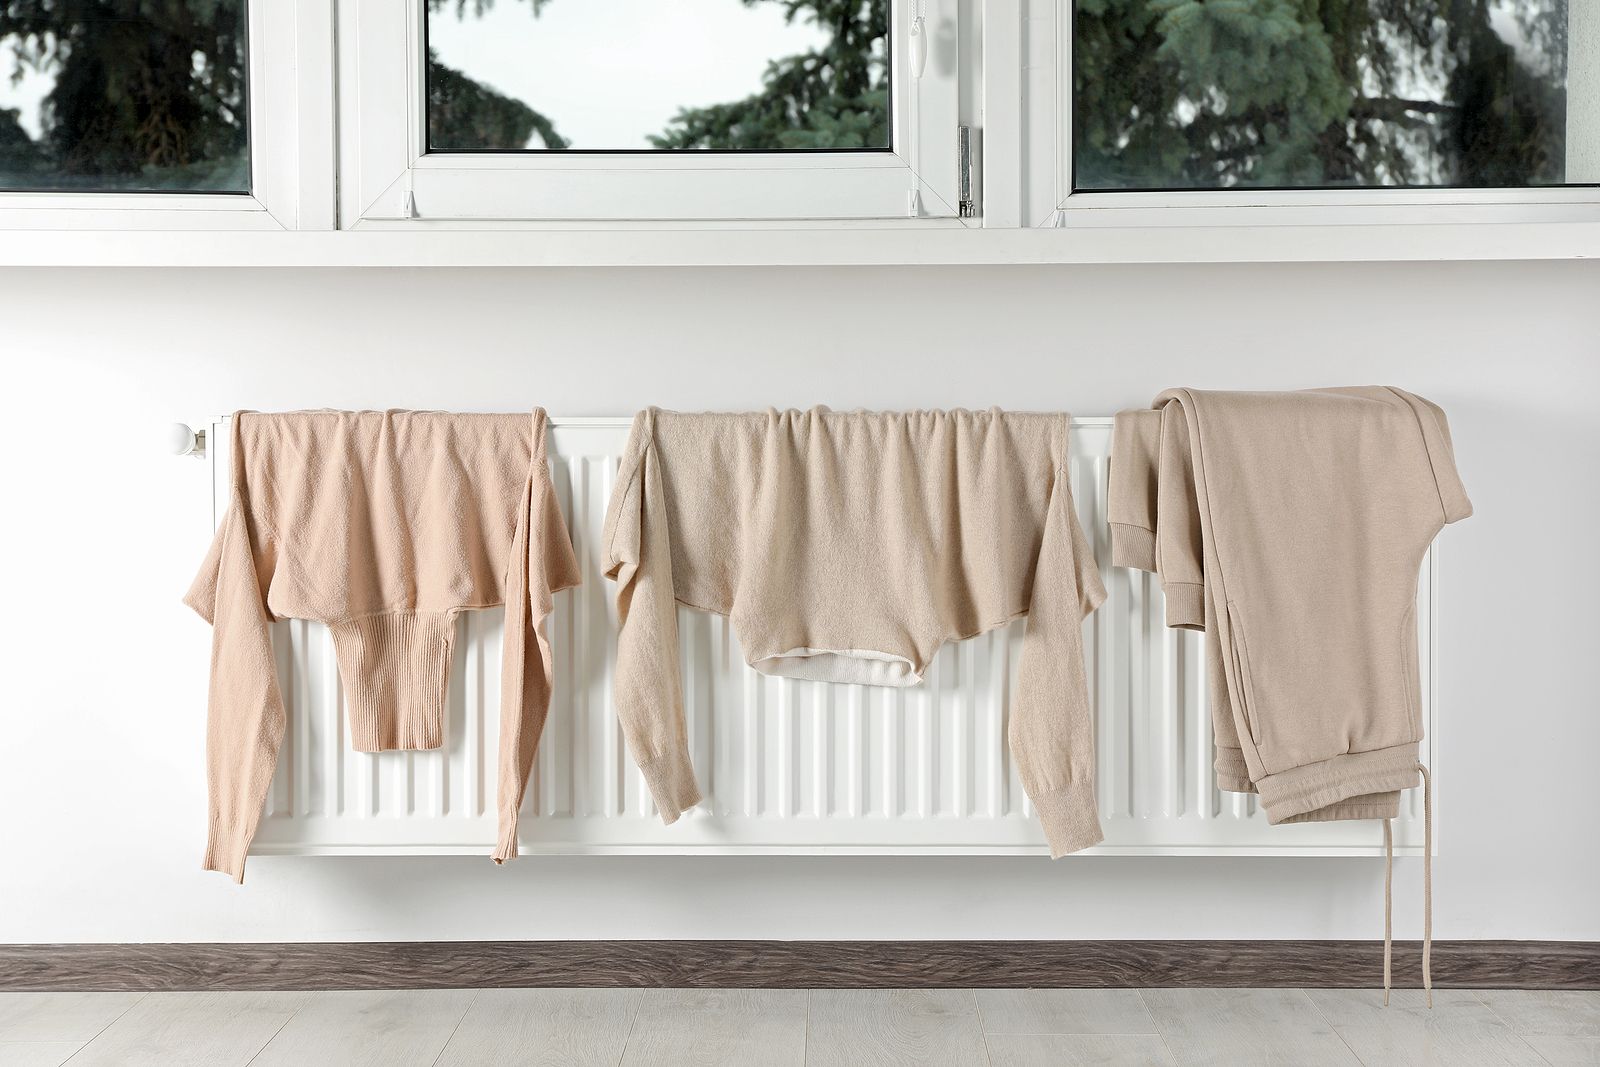 La razón por la que no debes secar la ropa sobre un radiador